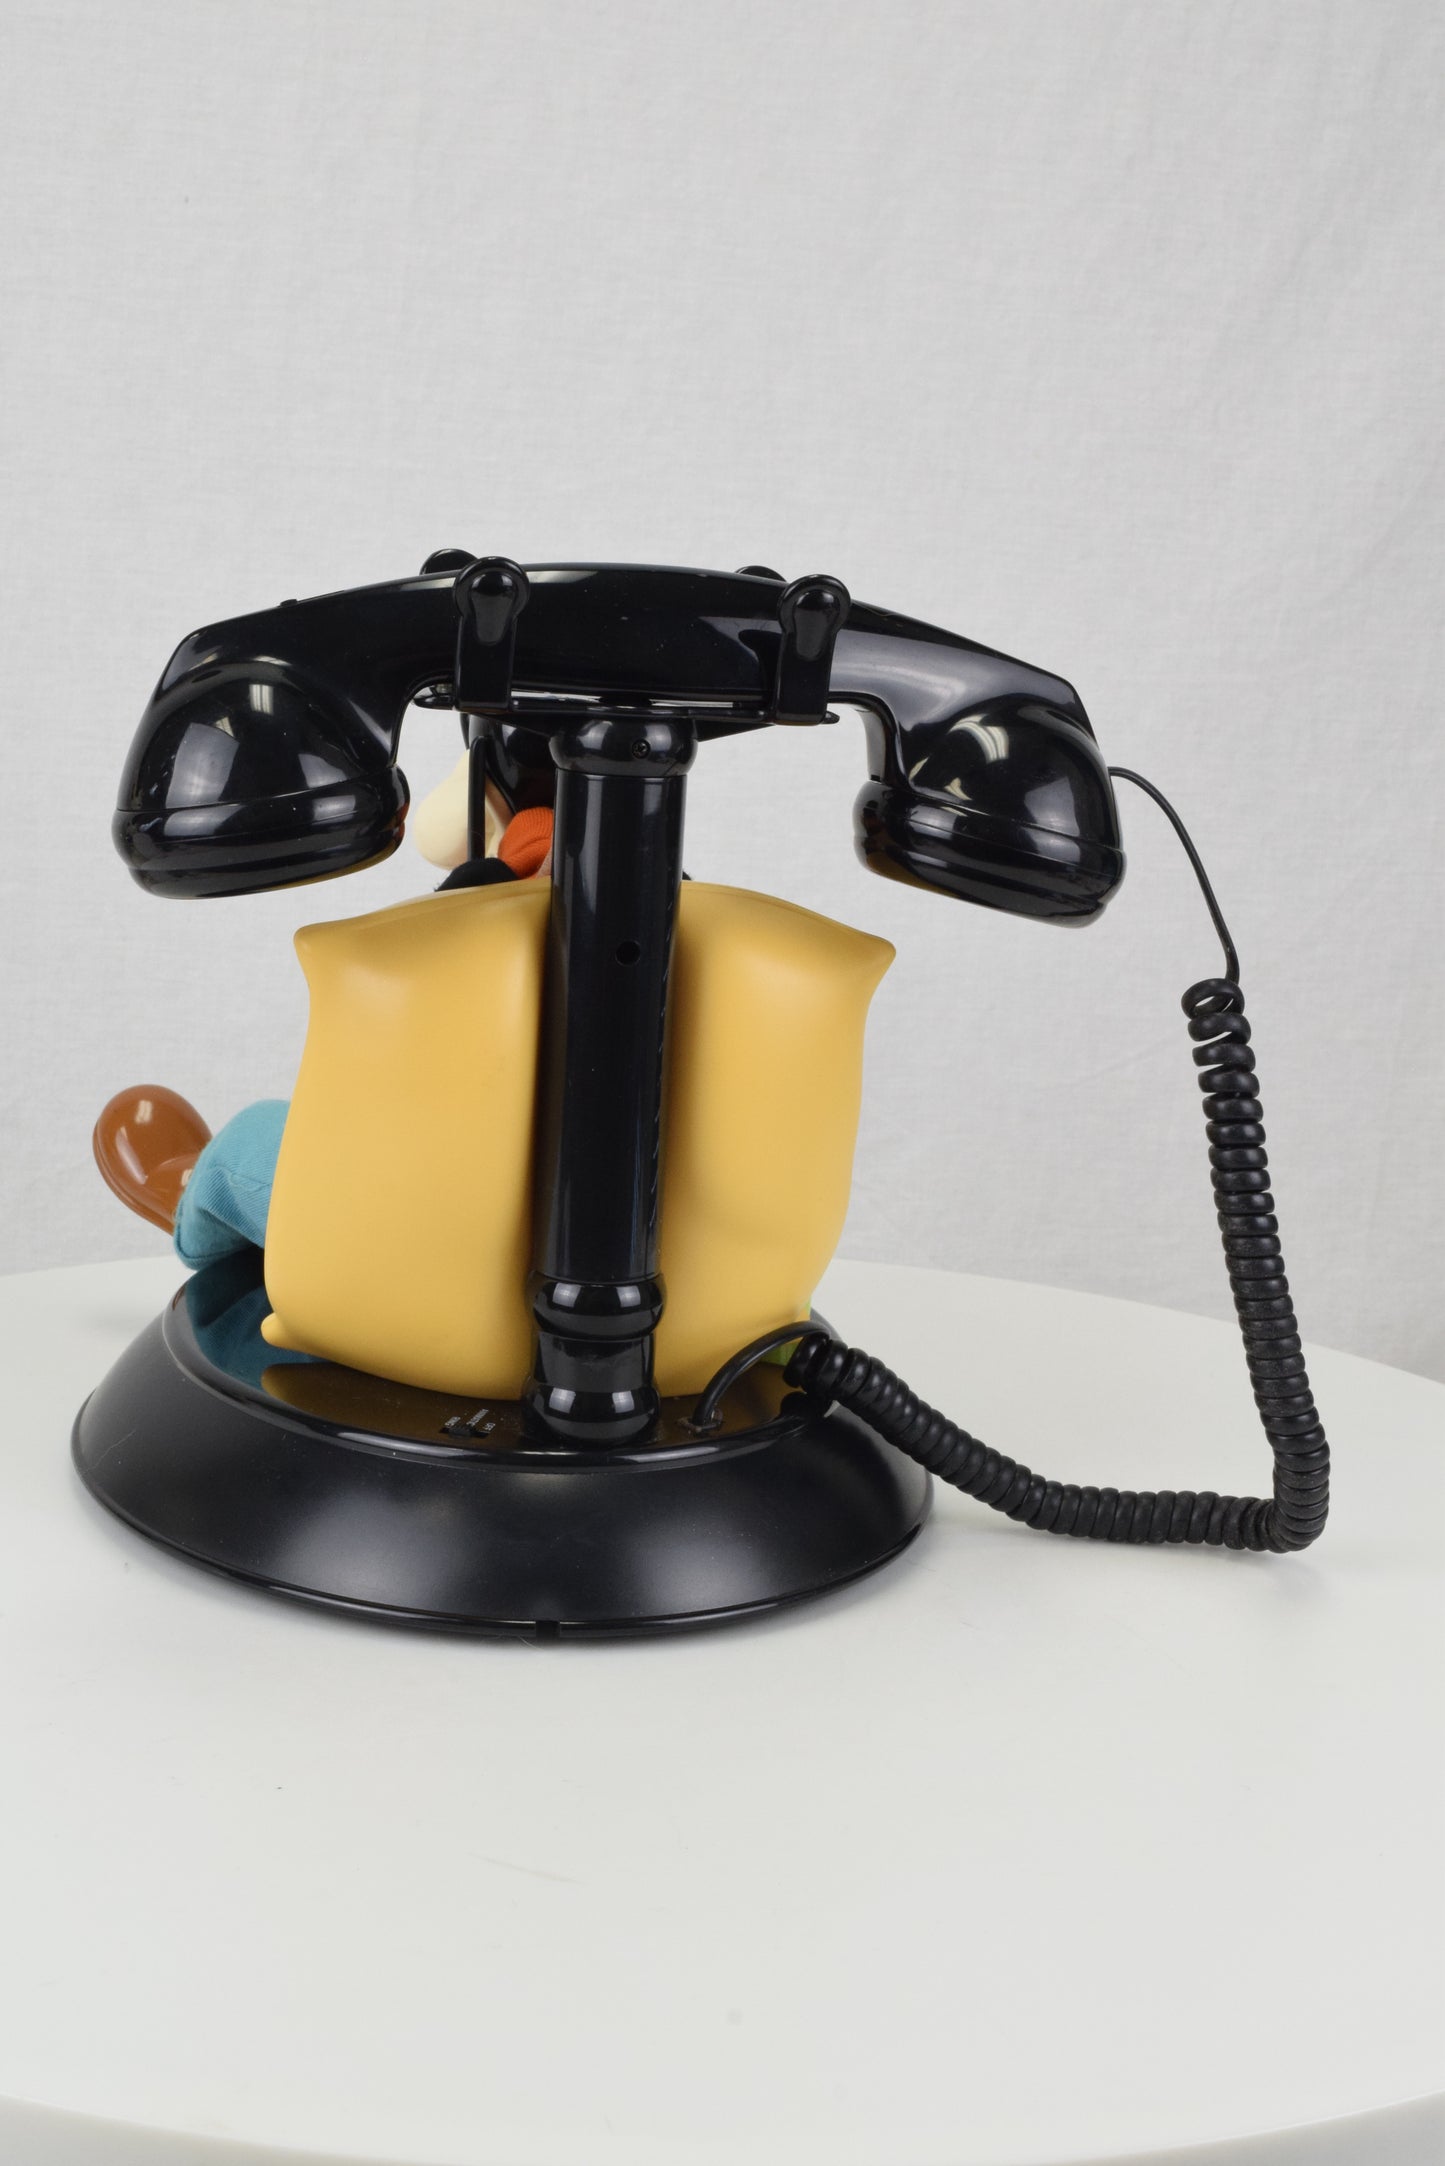 Goofy Novelty Telephone